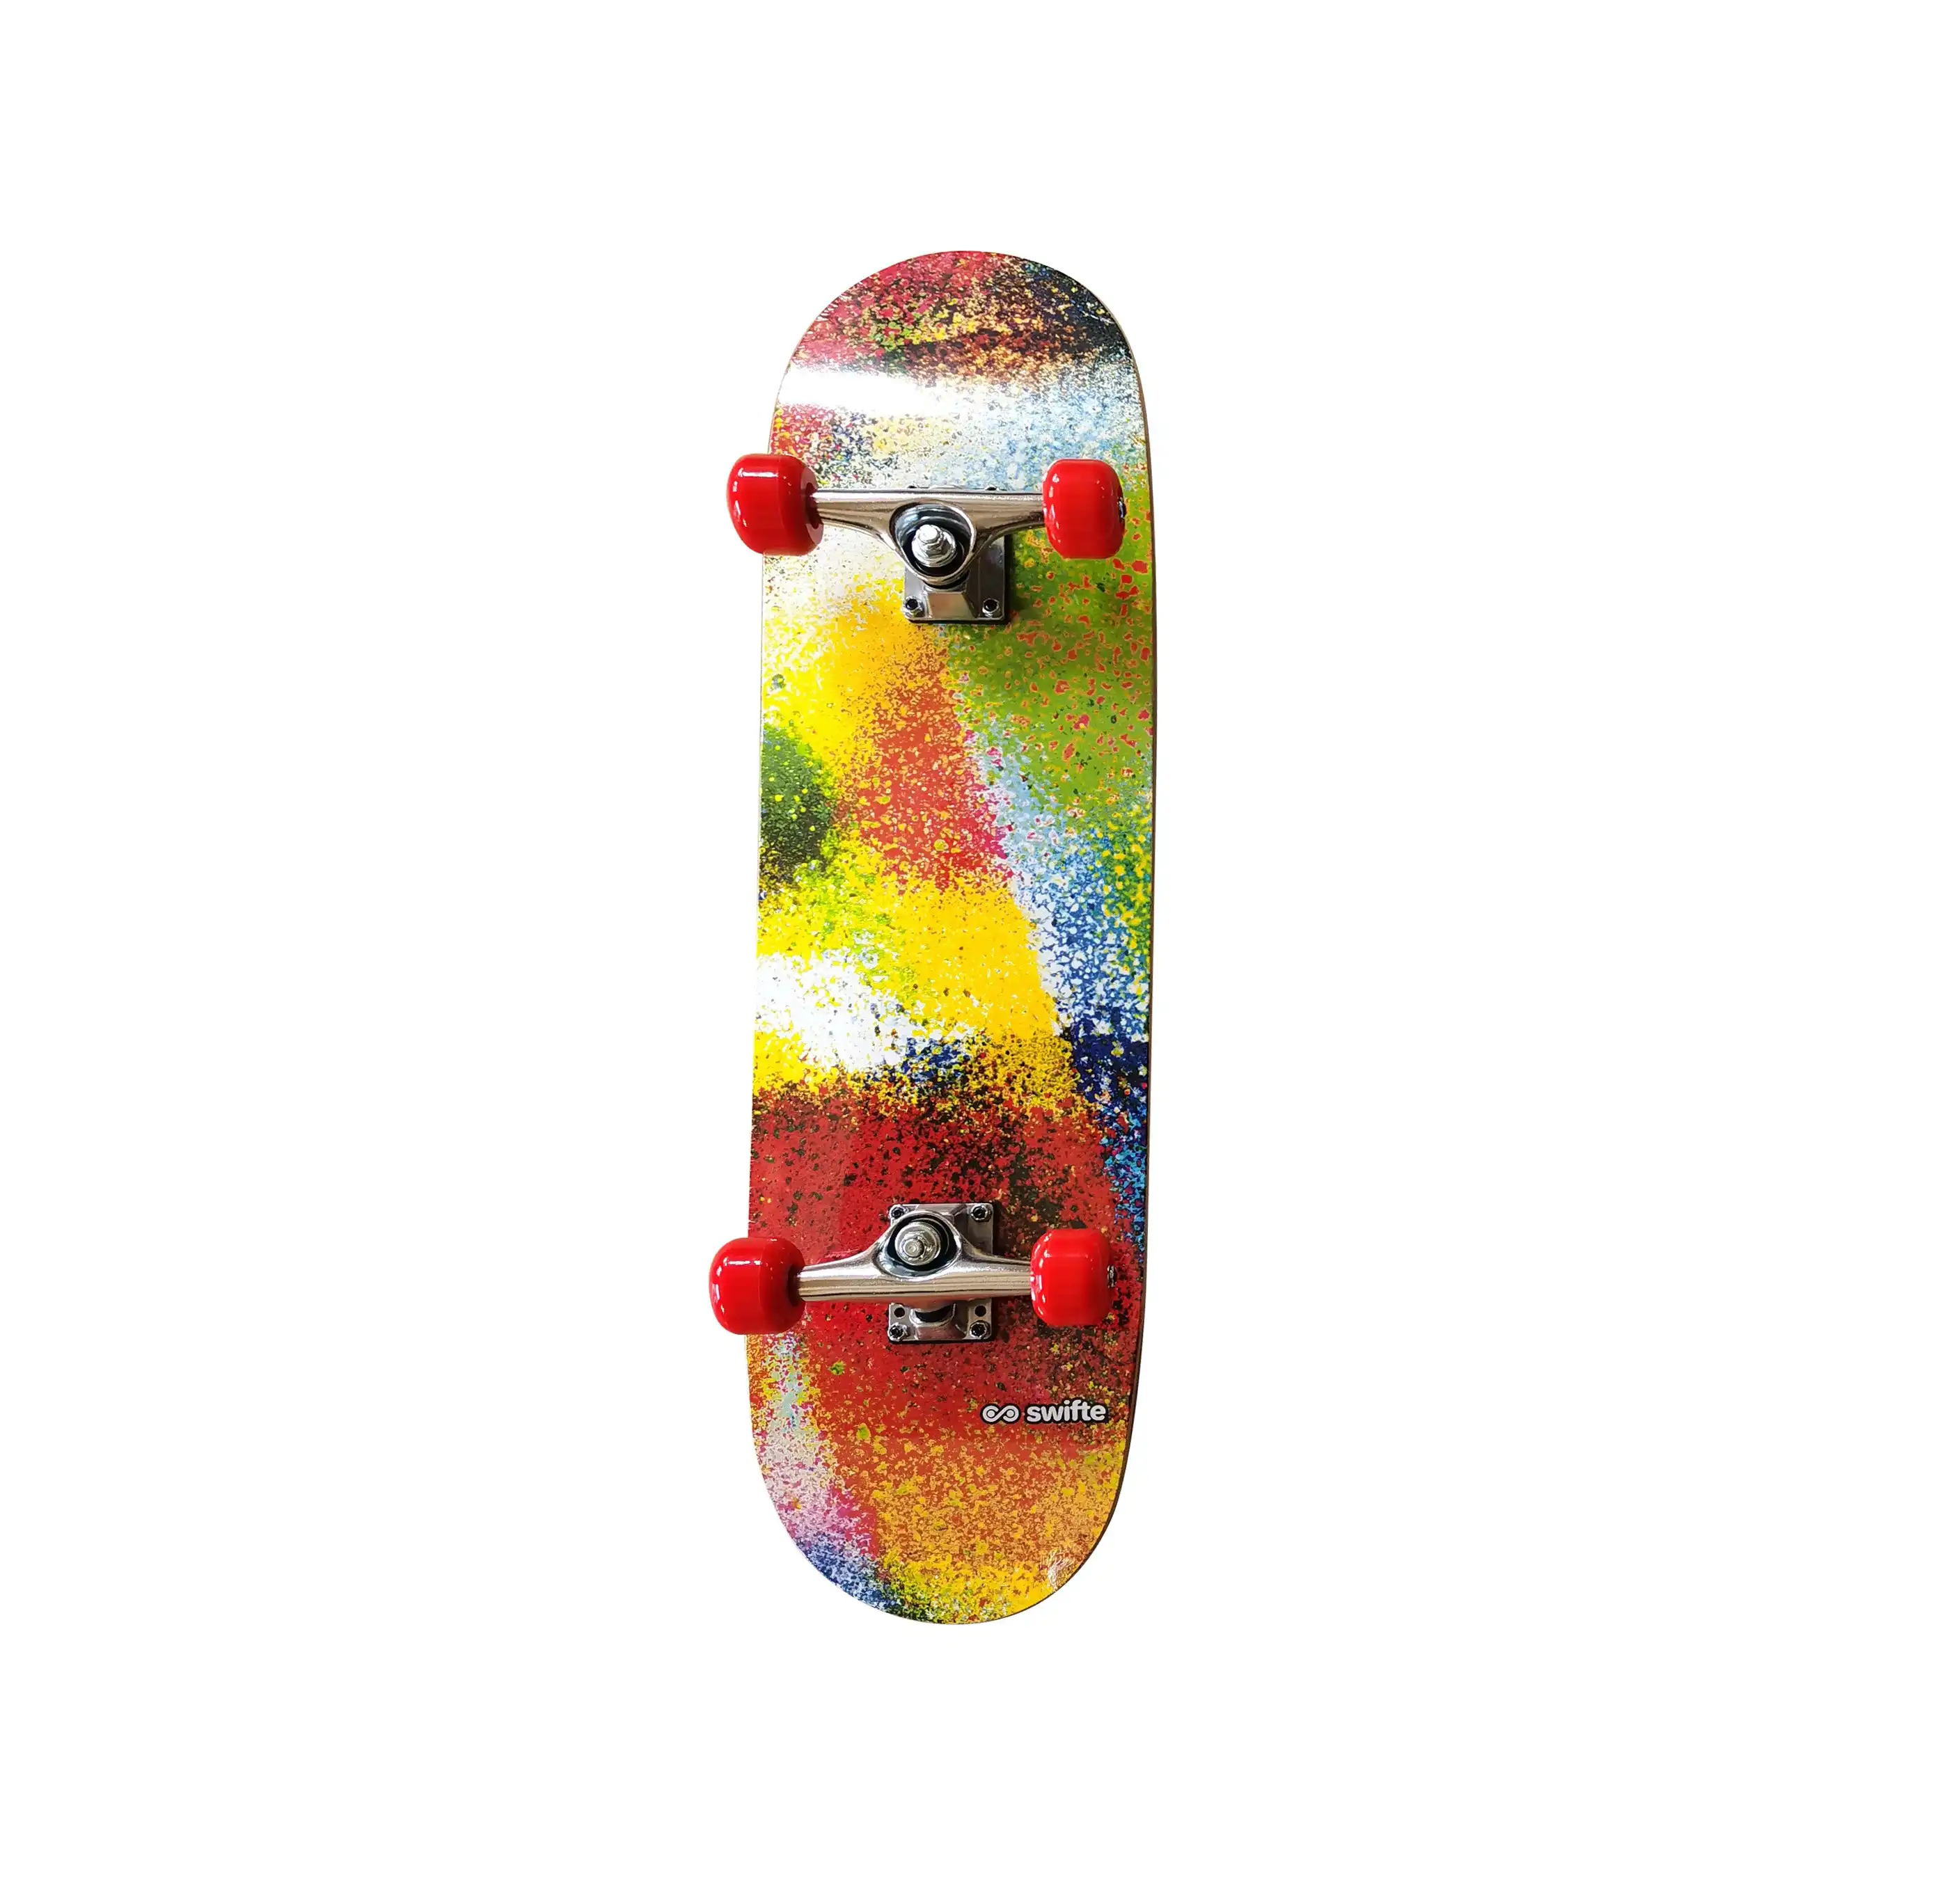 Swifte 31 X 8.25" Skateboard - Spray Paint